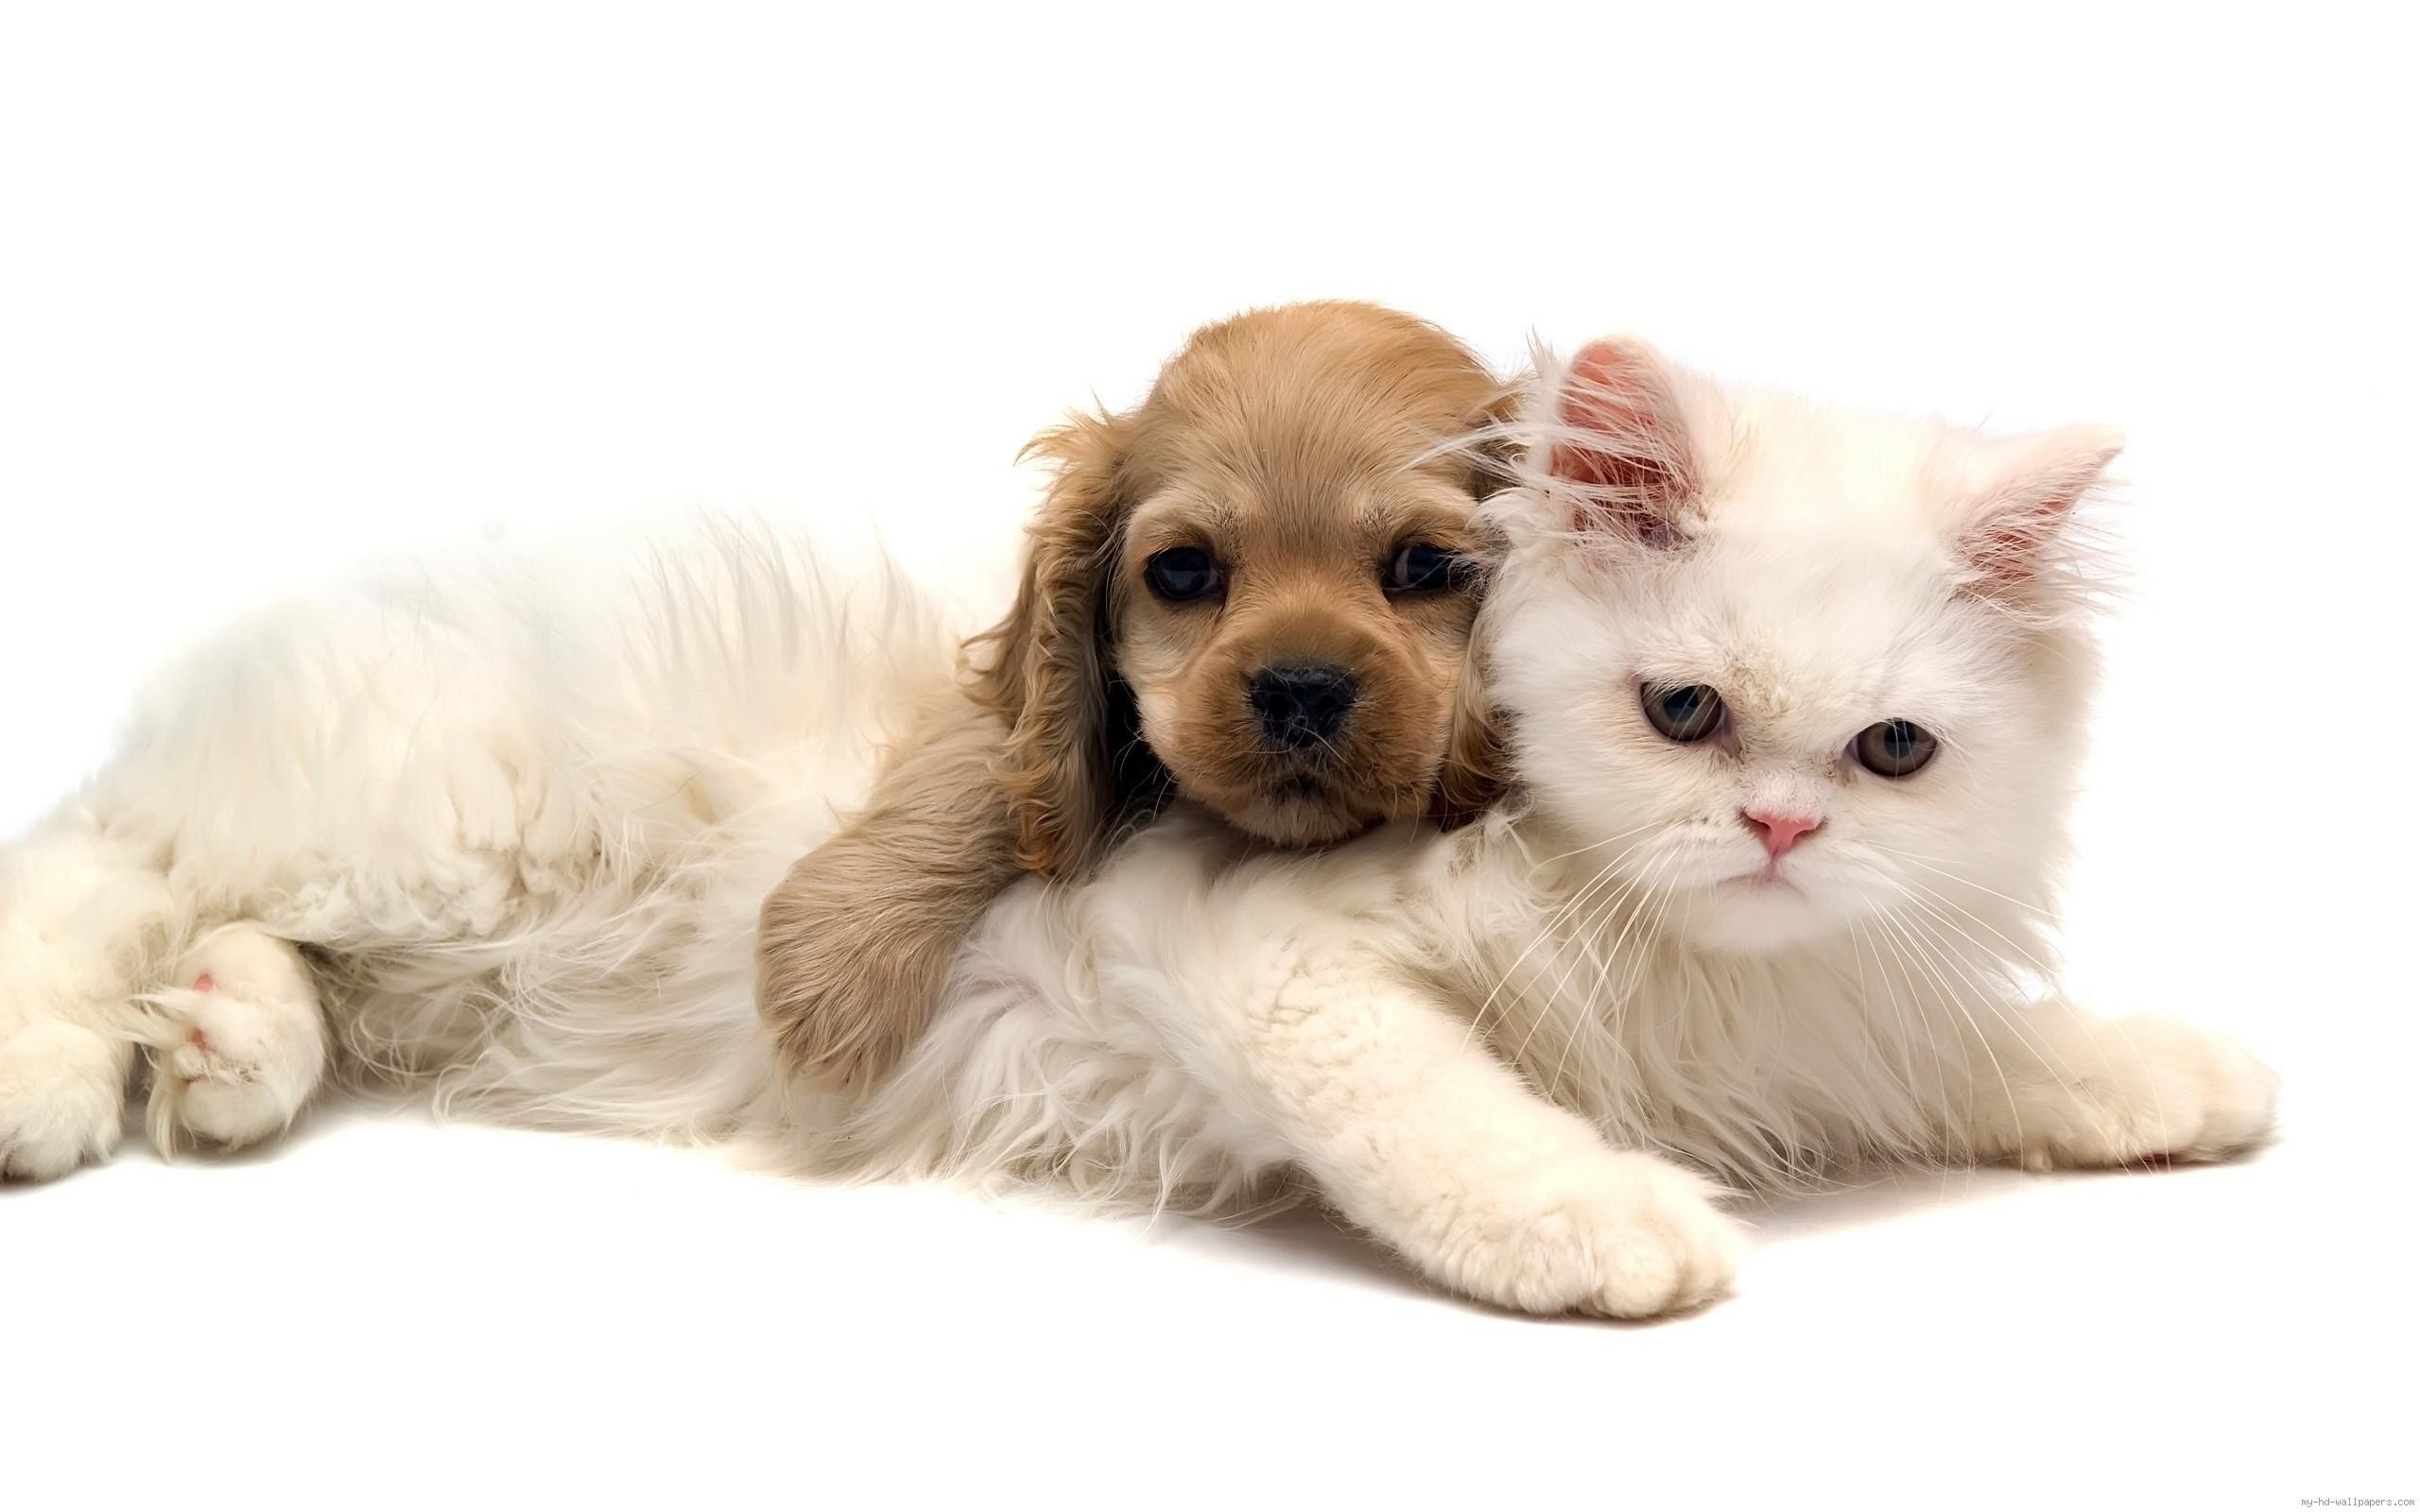 猫和小狗是拥抱壁纸640x1136分辨率下载,猫和小狗是拥抱壁纸,高清图片